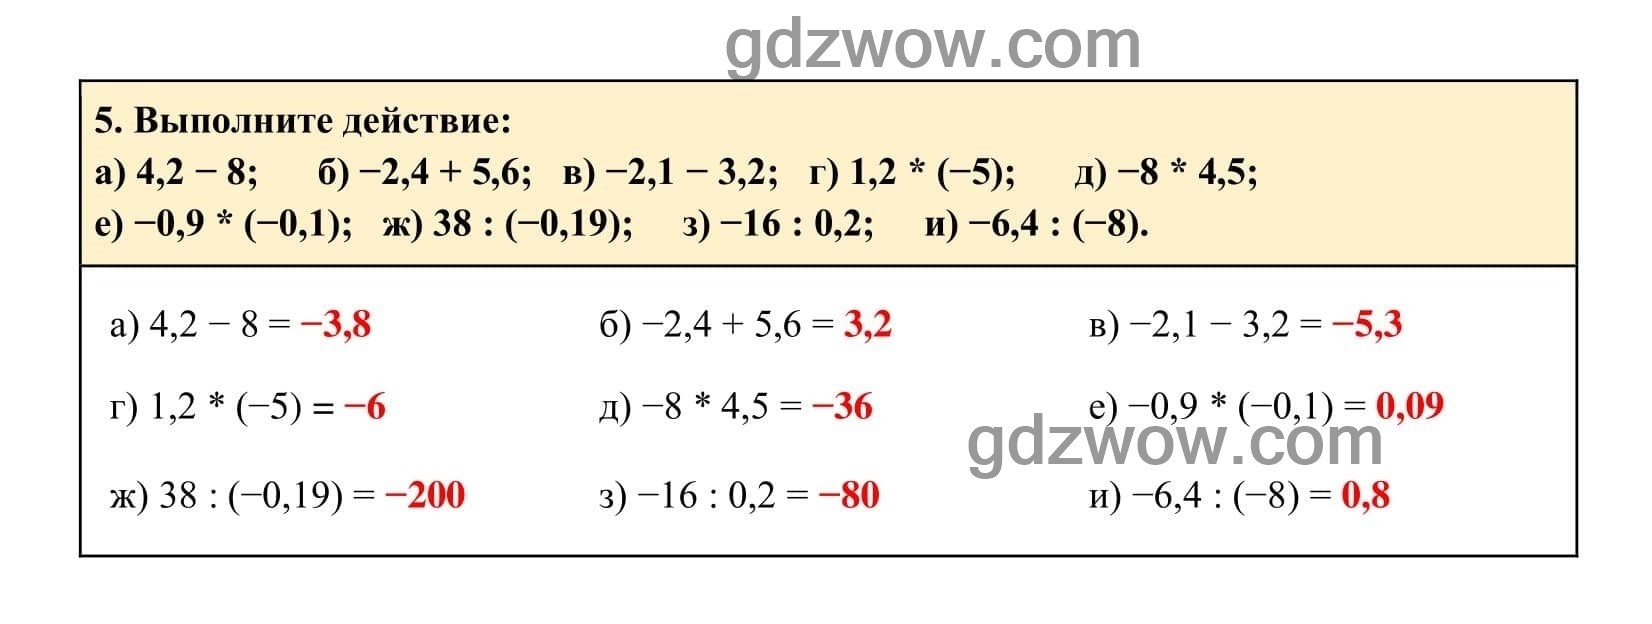 Упражнение 5 - ГДЗ по Алгебре 7 класс Учебник Макарычев (решебник) - GDZwow